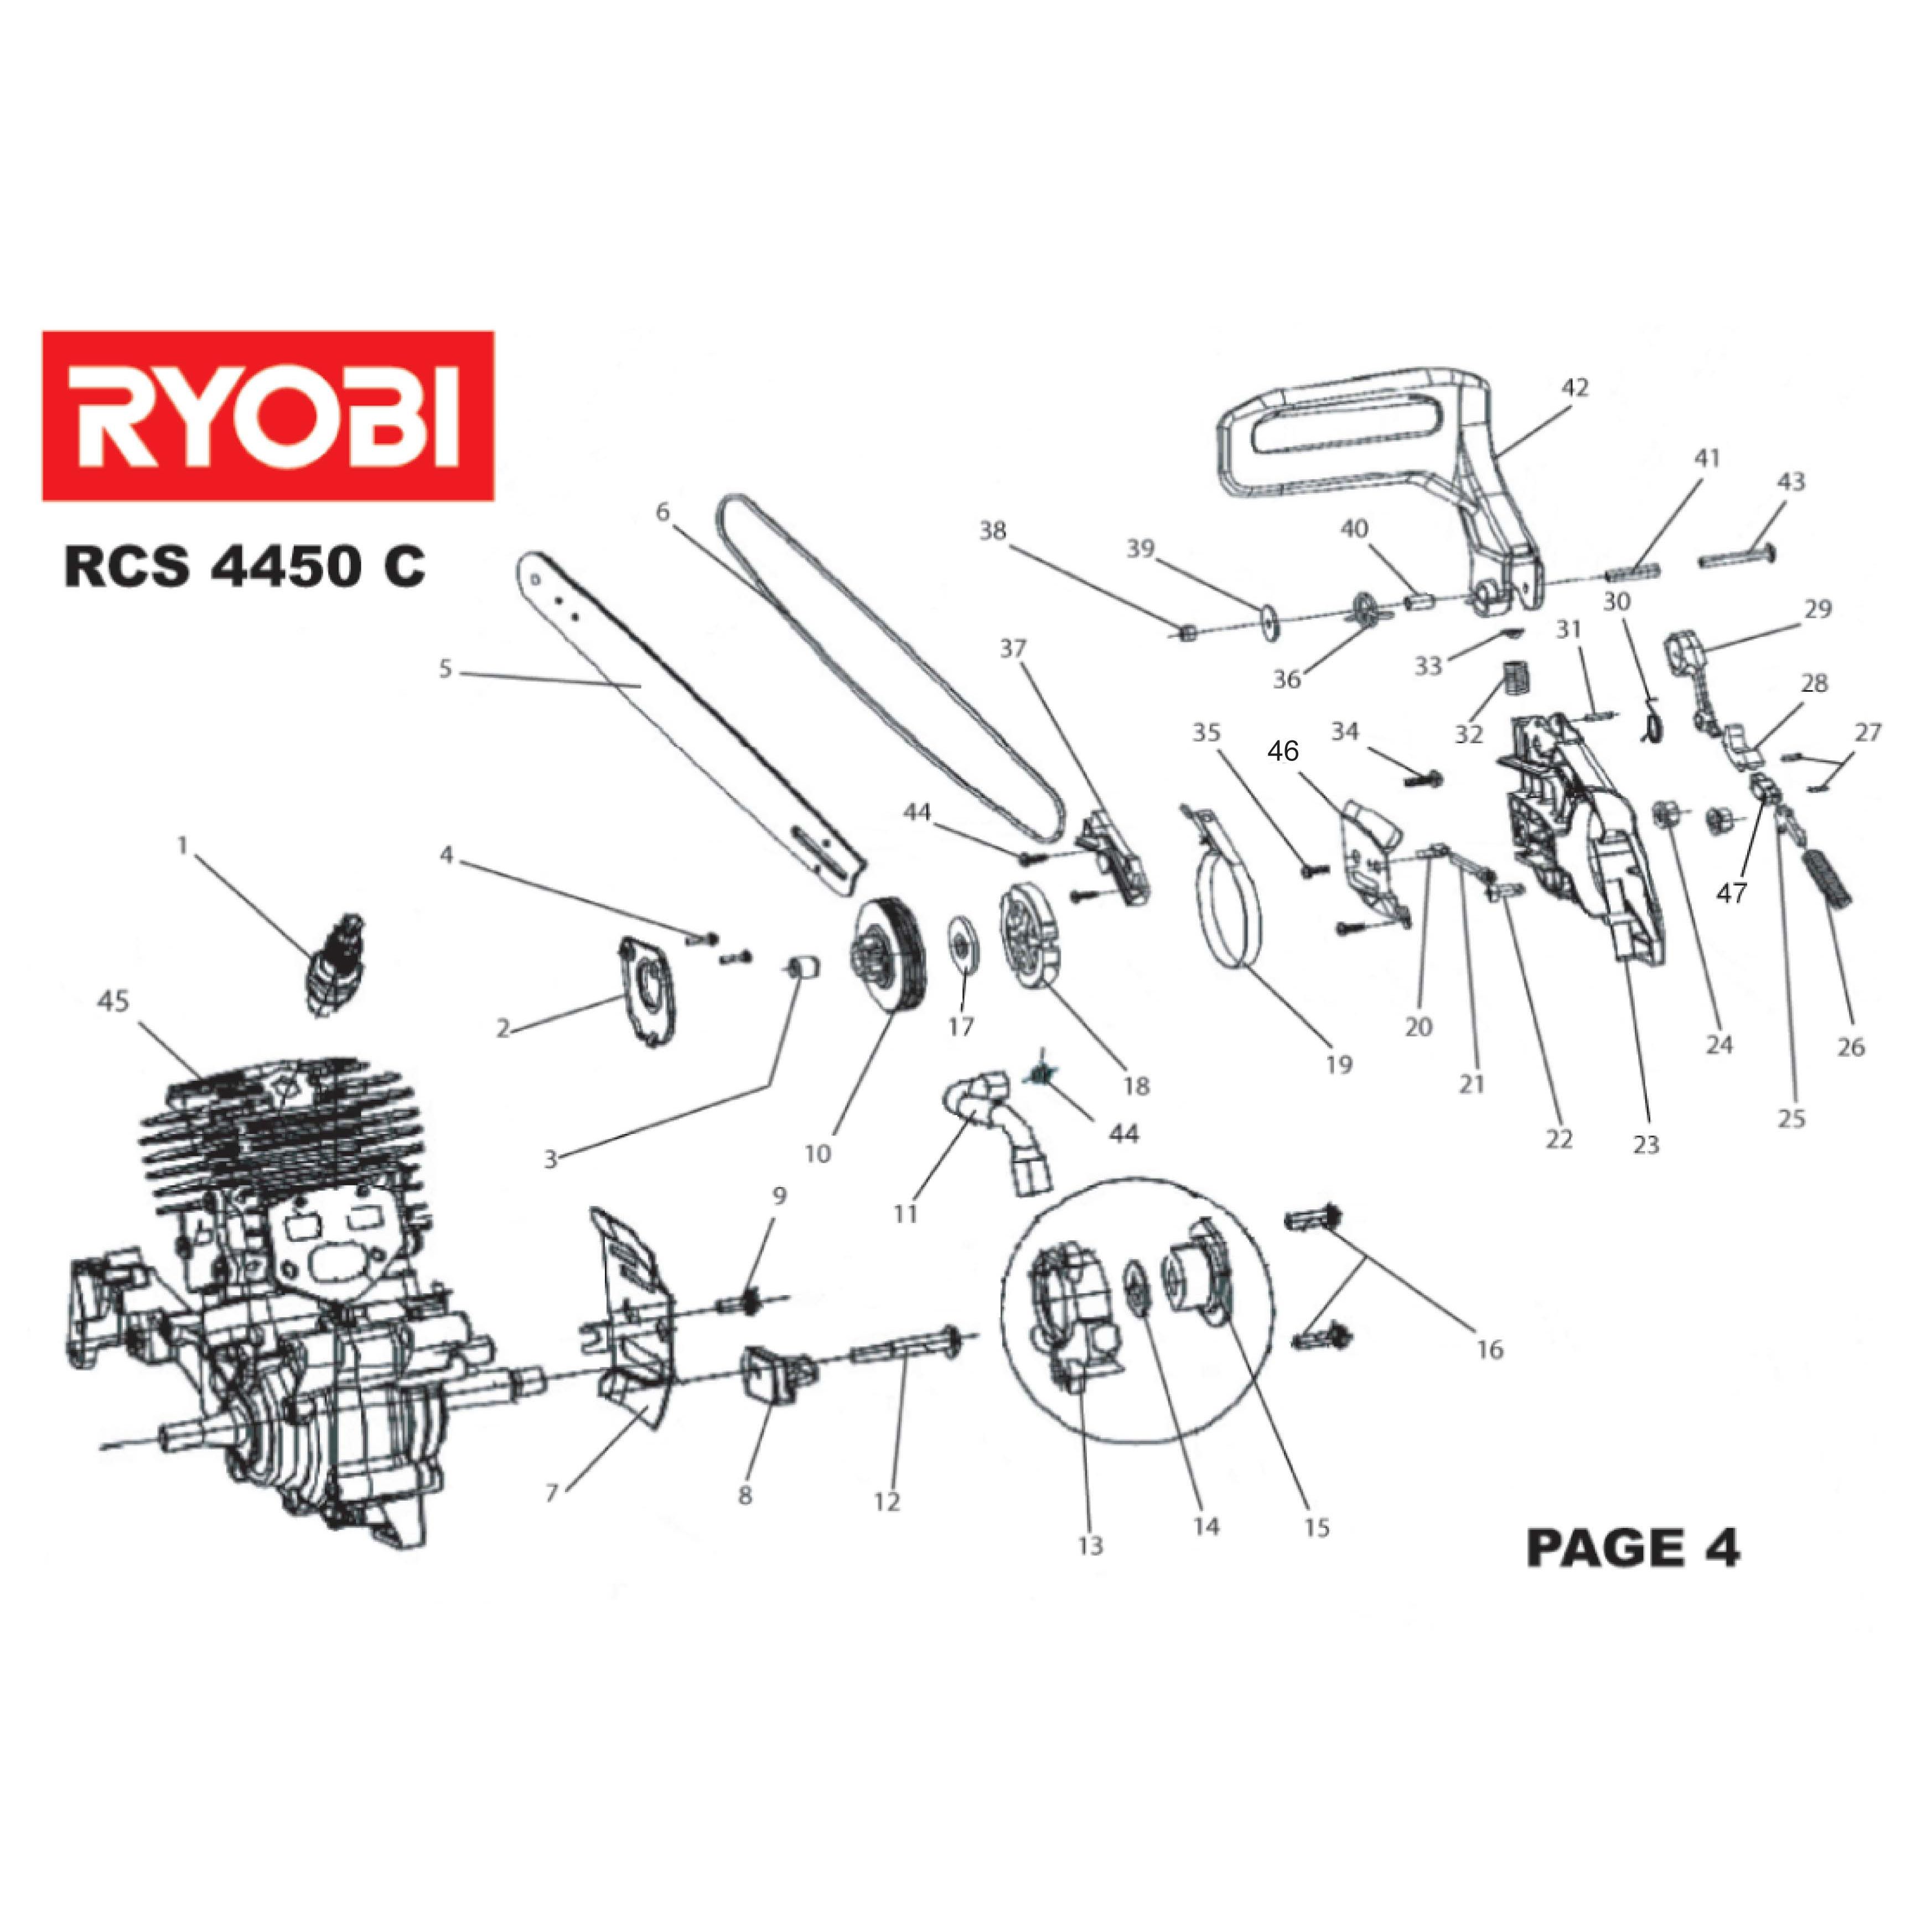 Ryobi Parts List - Heat exchanger spare parts